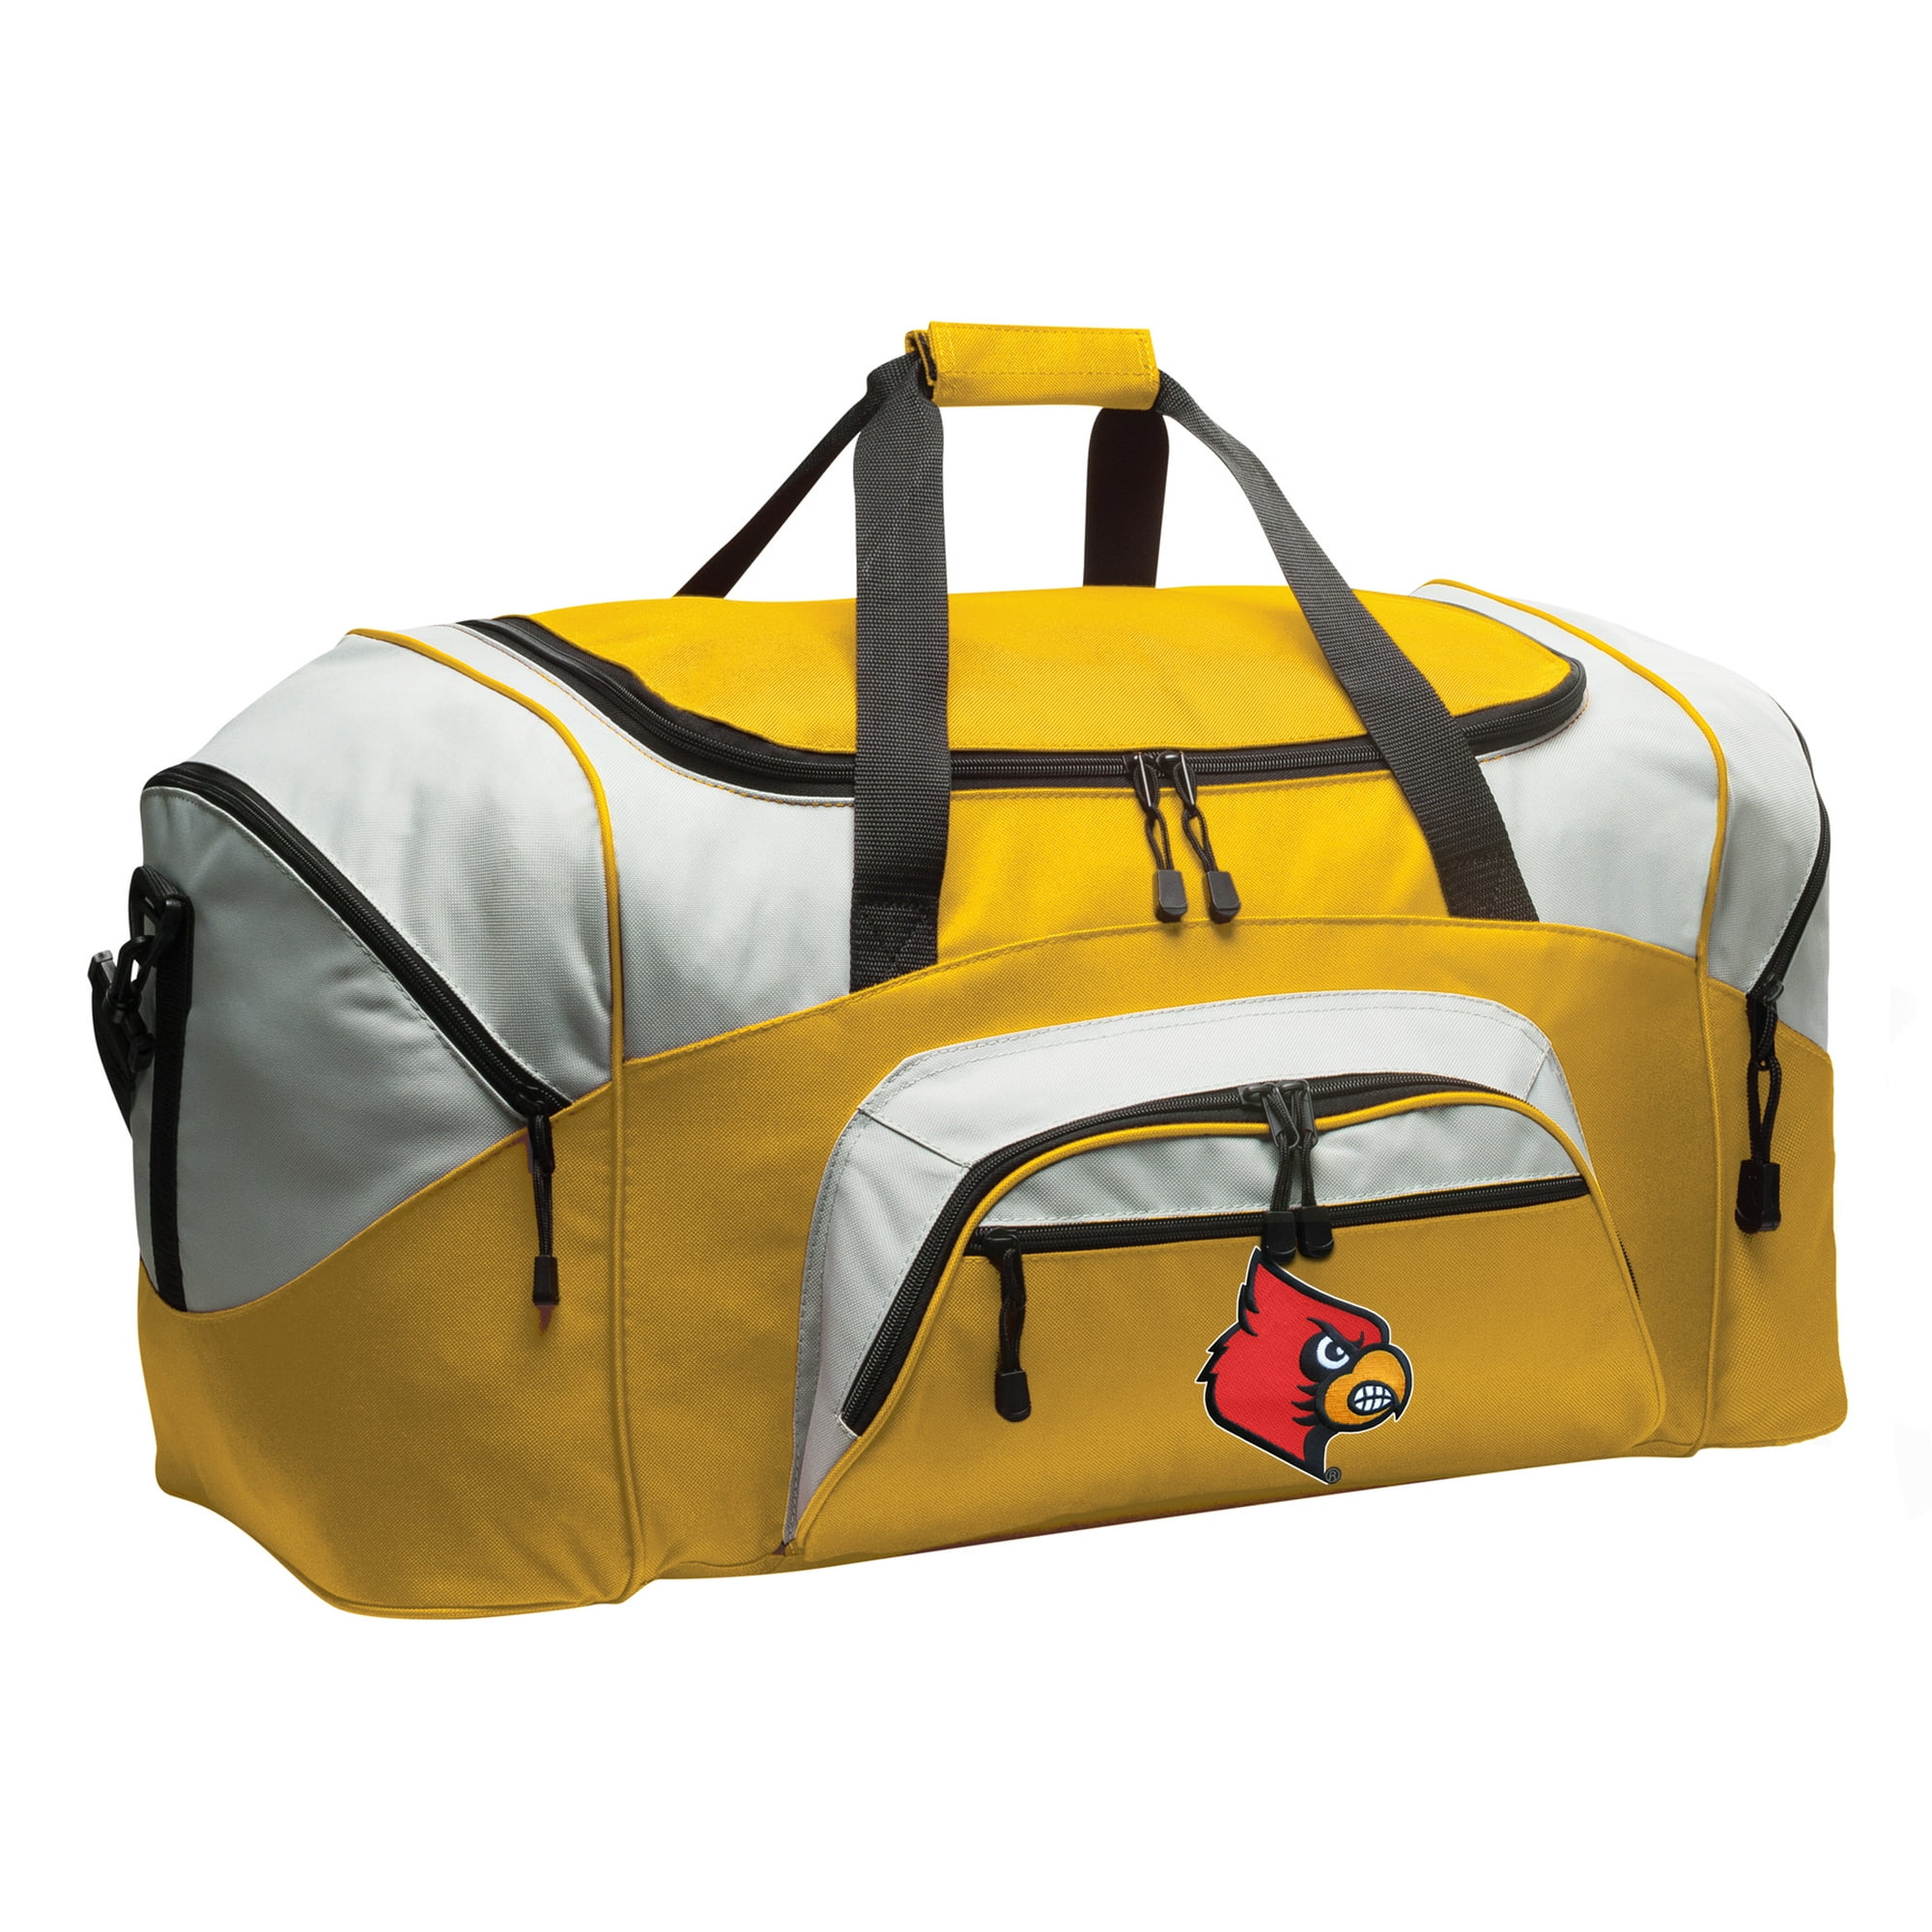 Broad Bay Louisville Duffel Bag or Louisville Luggage Bag 